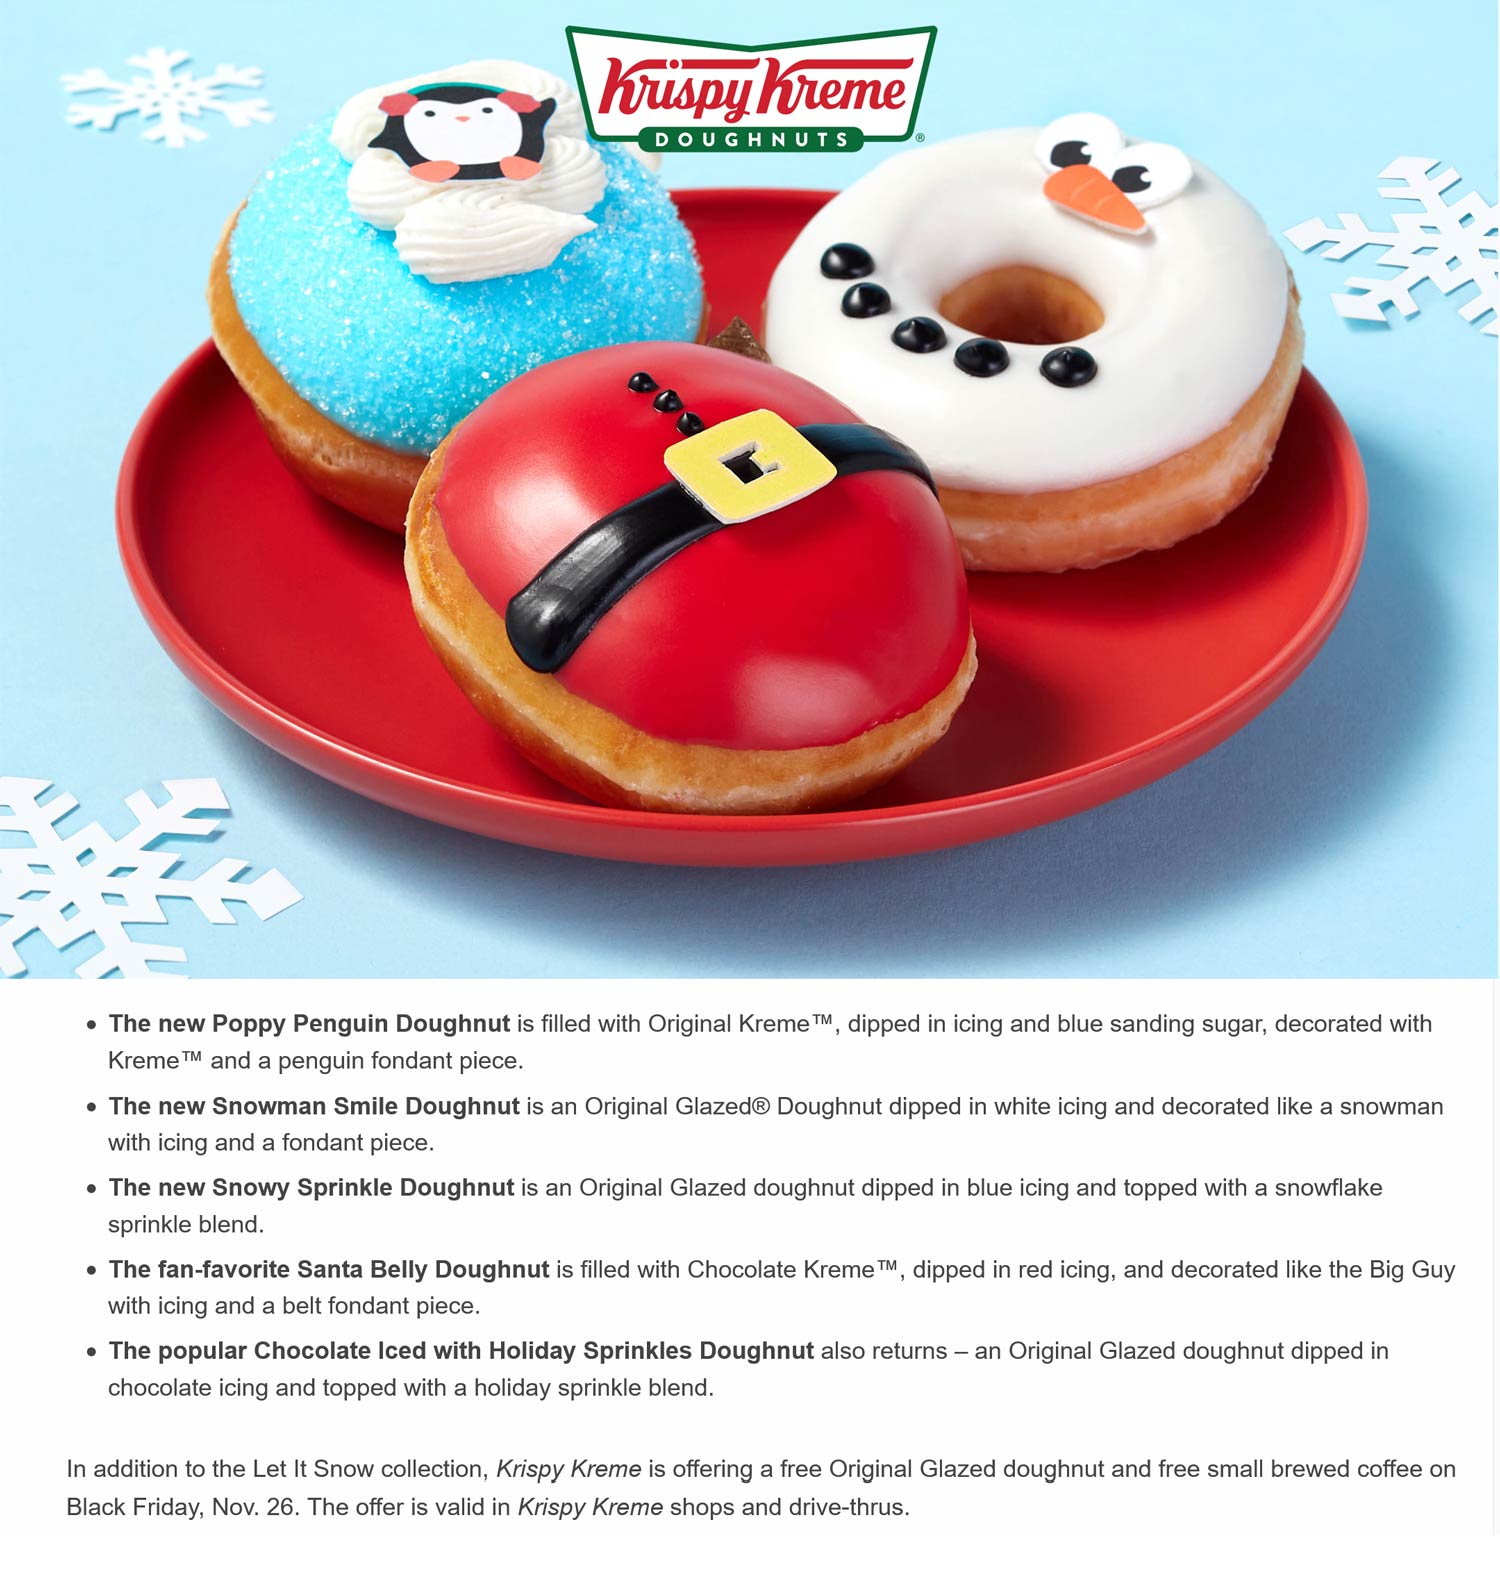 Krispy Kreme restaurants Coupon  Free coffee + donut Friday at Krispy Kreme #krispykreme 